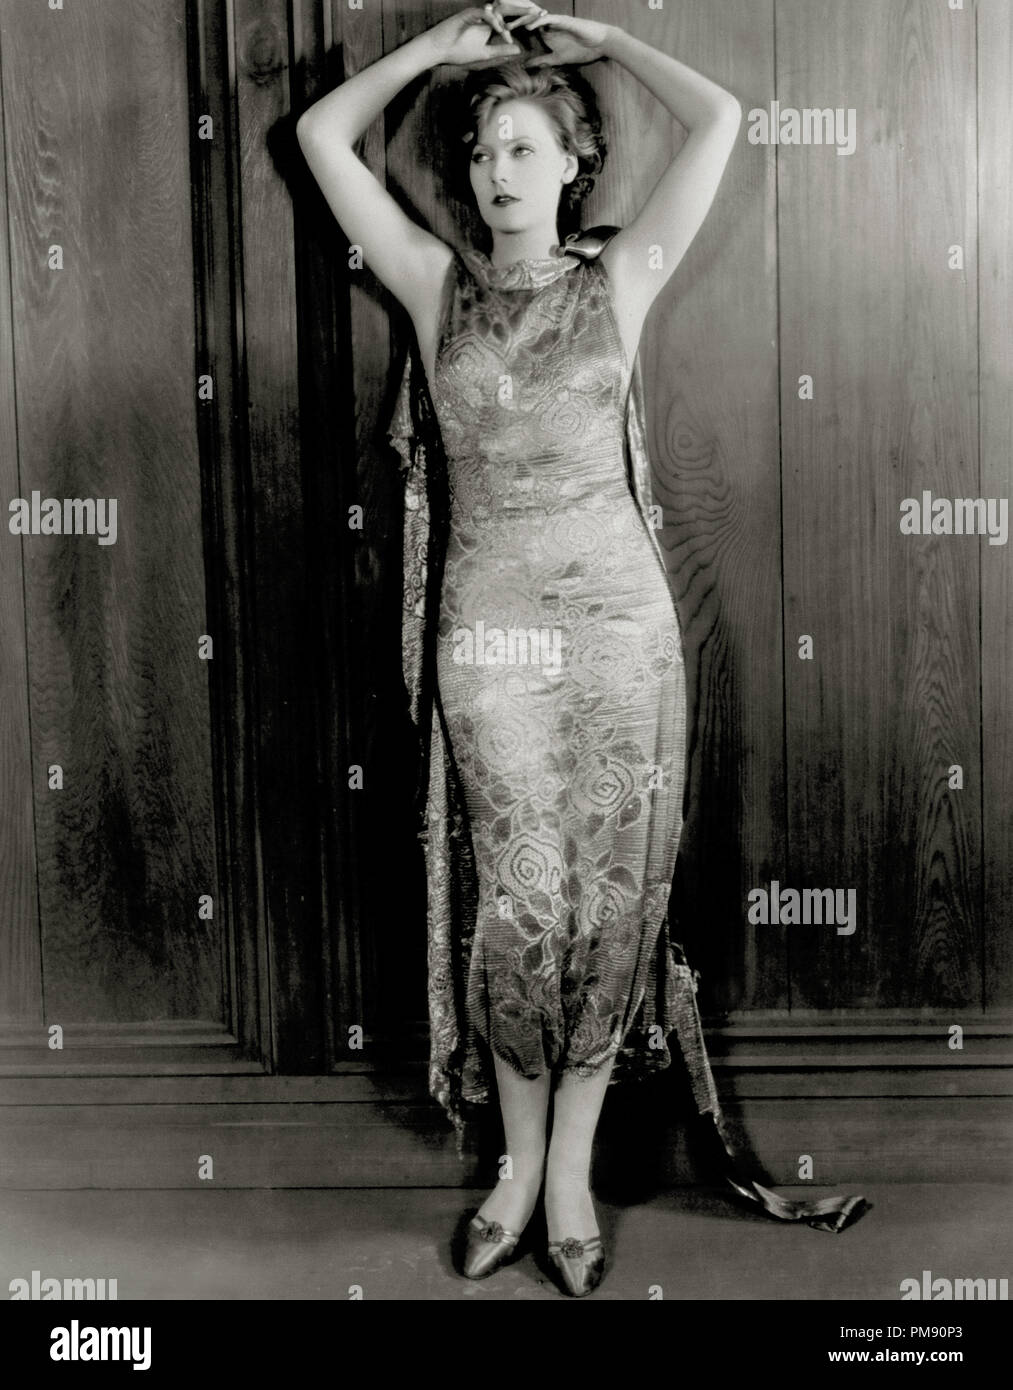 (Archivierung klassische Kino - Greta Garbo Retrospektive) Greta Garbo", dem Fleisch und dem Teufel" 1926 MGM Datei Referenz # 31523 043 THA Stockfoto